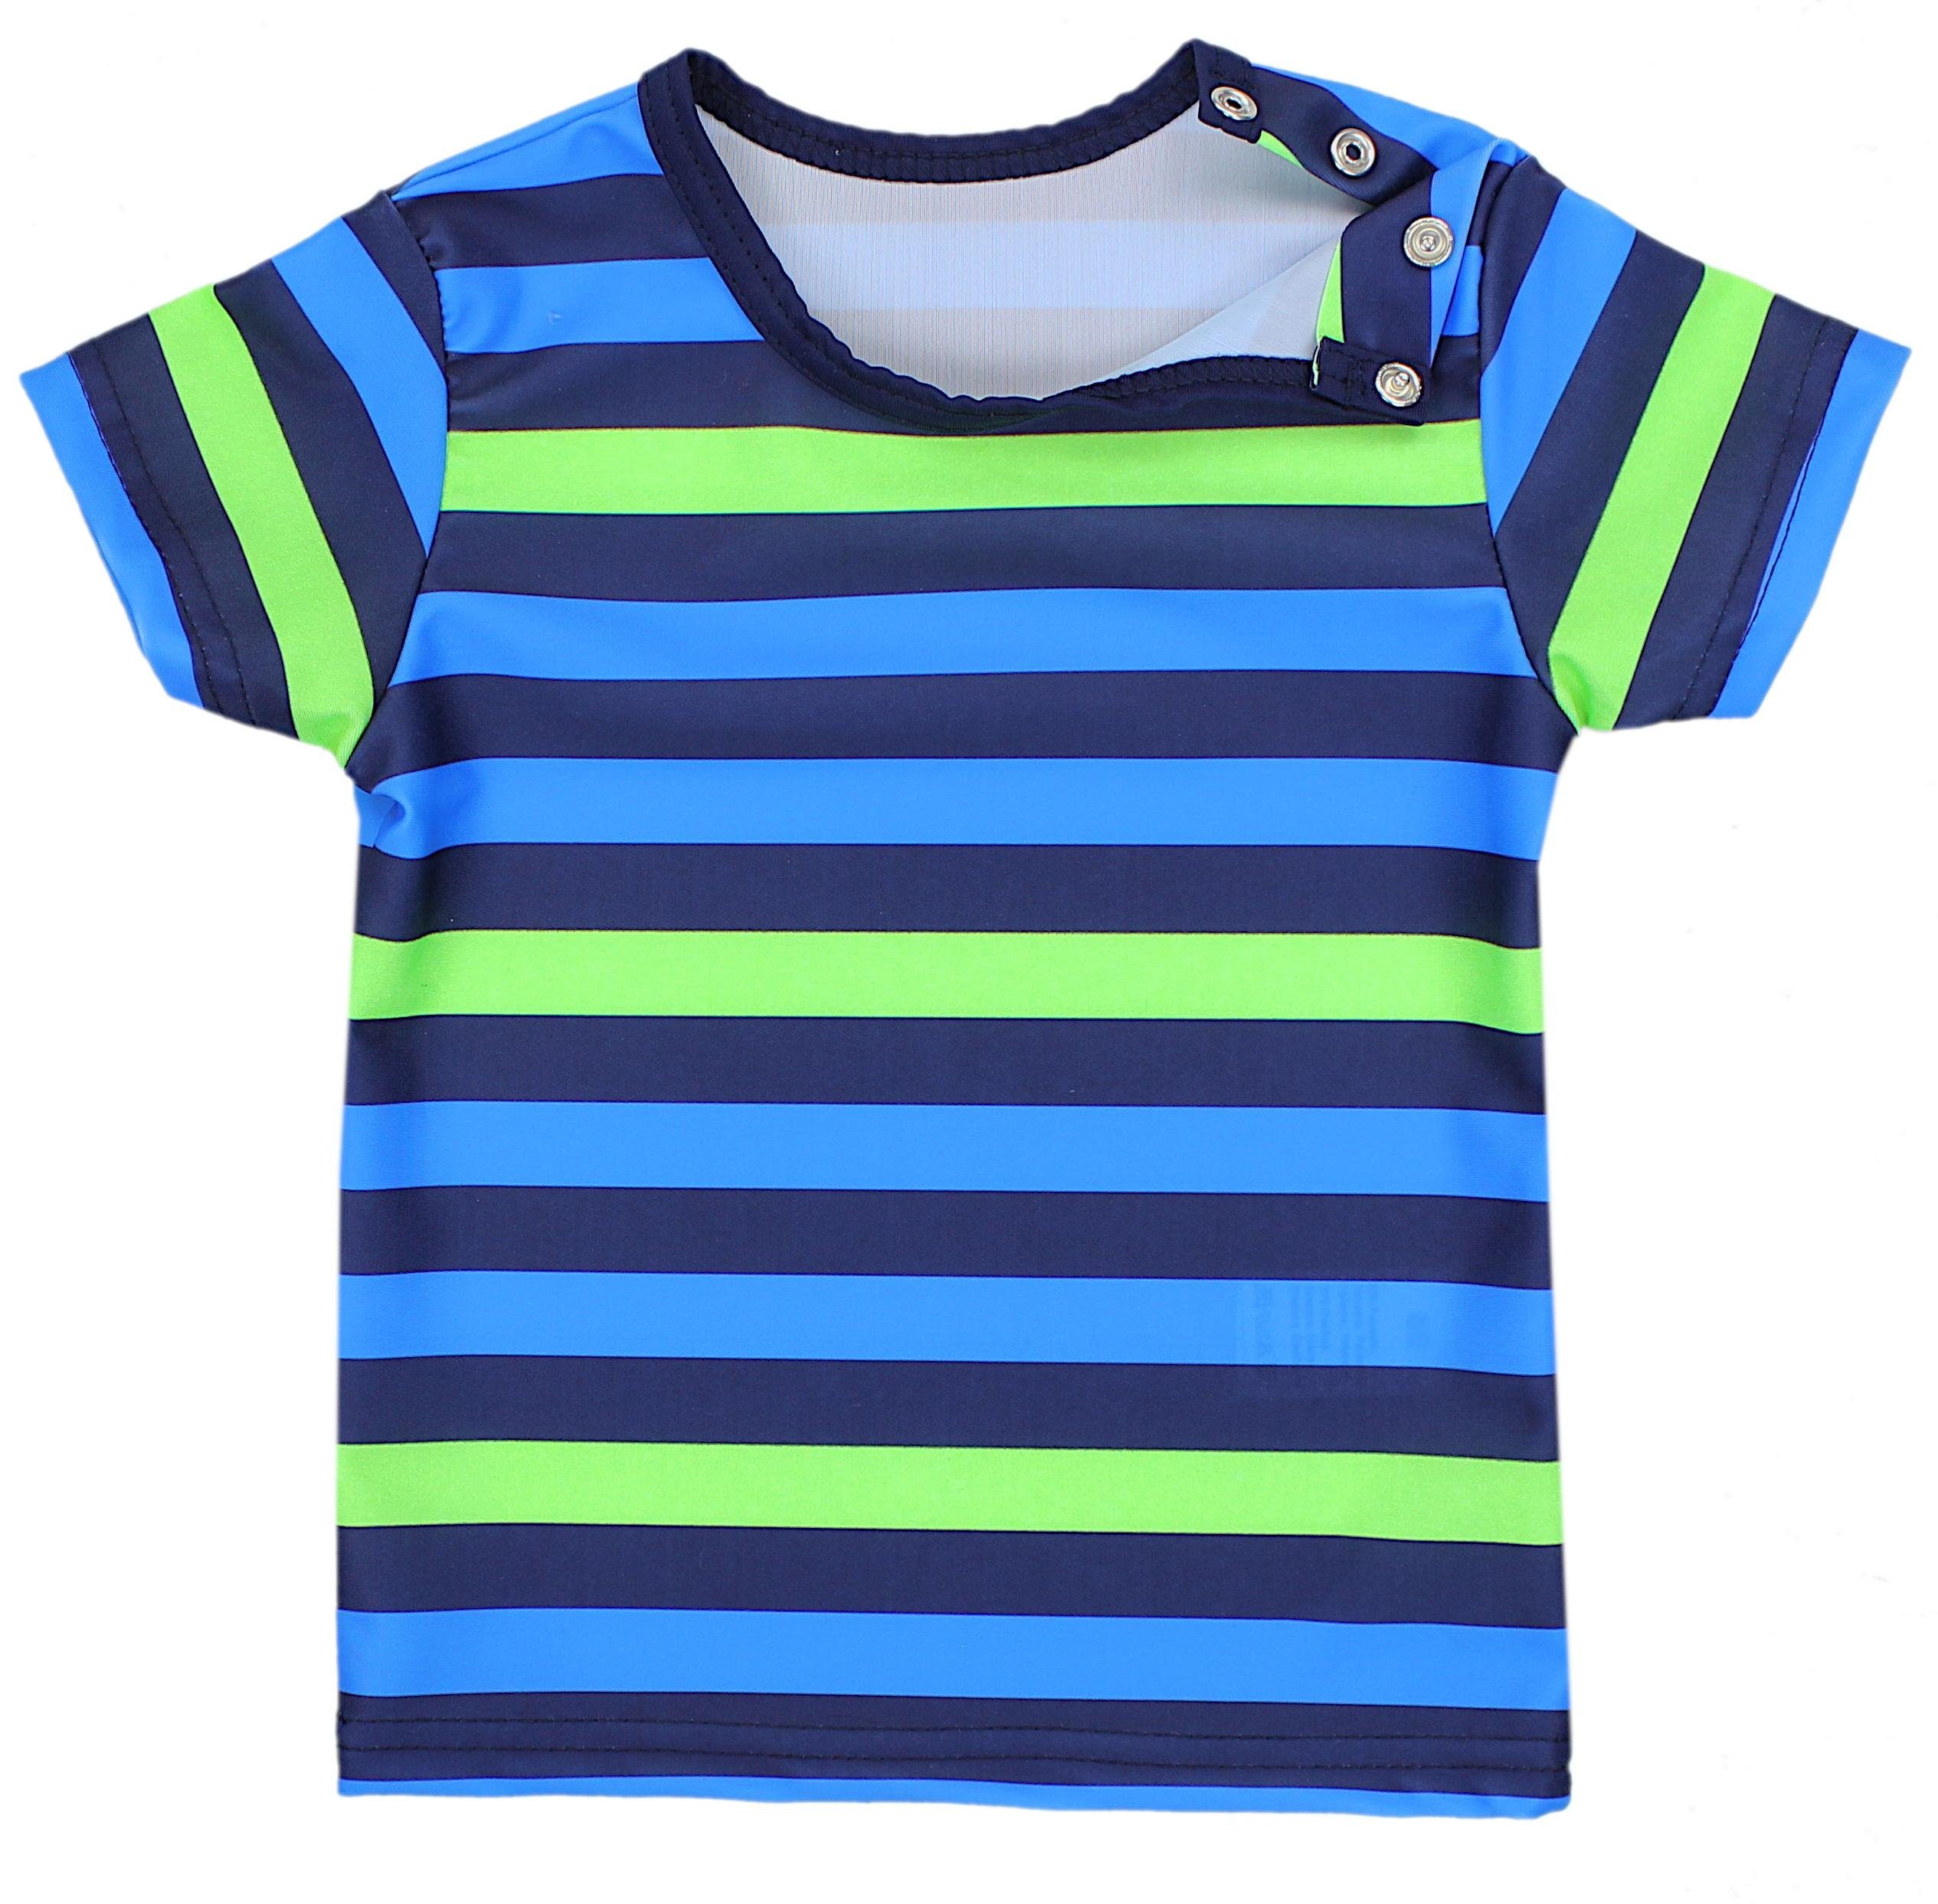 Jungen Aquarti Badeanzug / T-Shirt Baby Dunkelblau Kinder Zweiteiliger Grün Badeanzug Blau UV-Schutz / Badehose Streifen